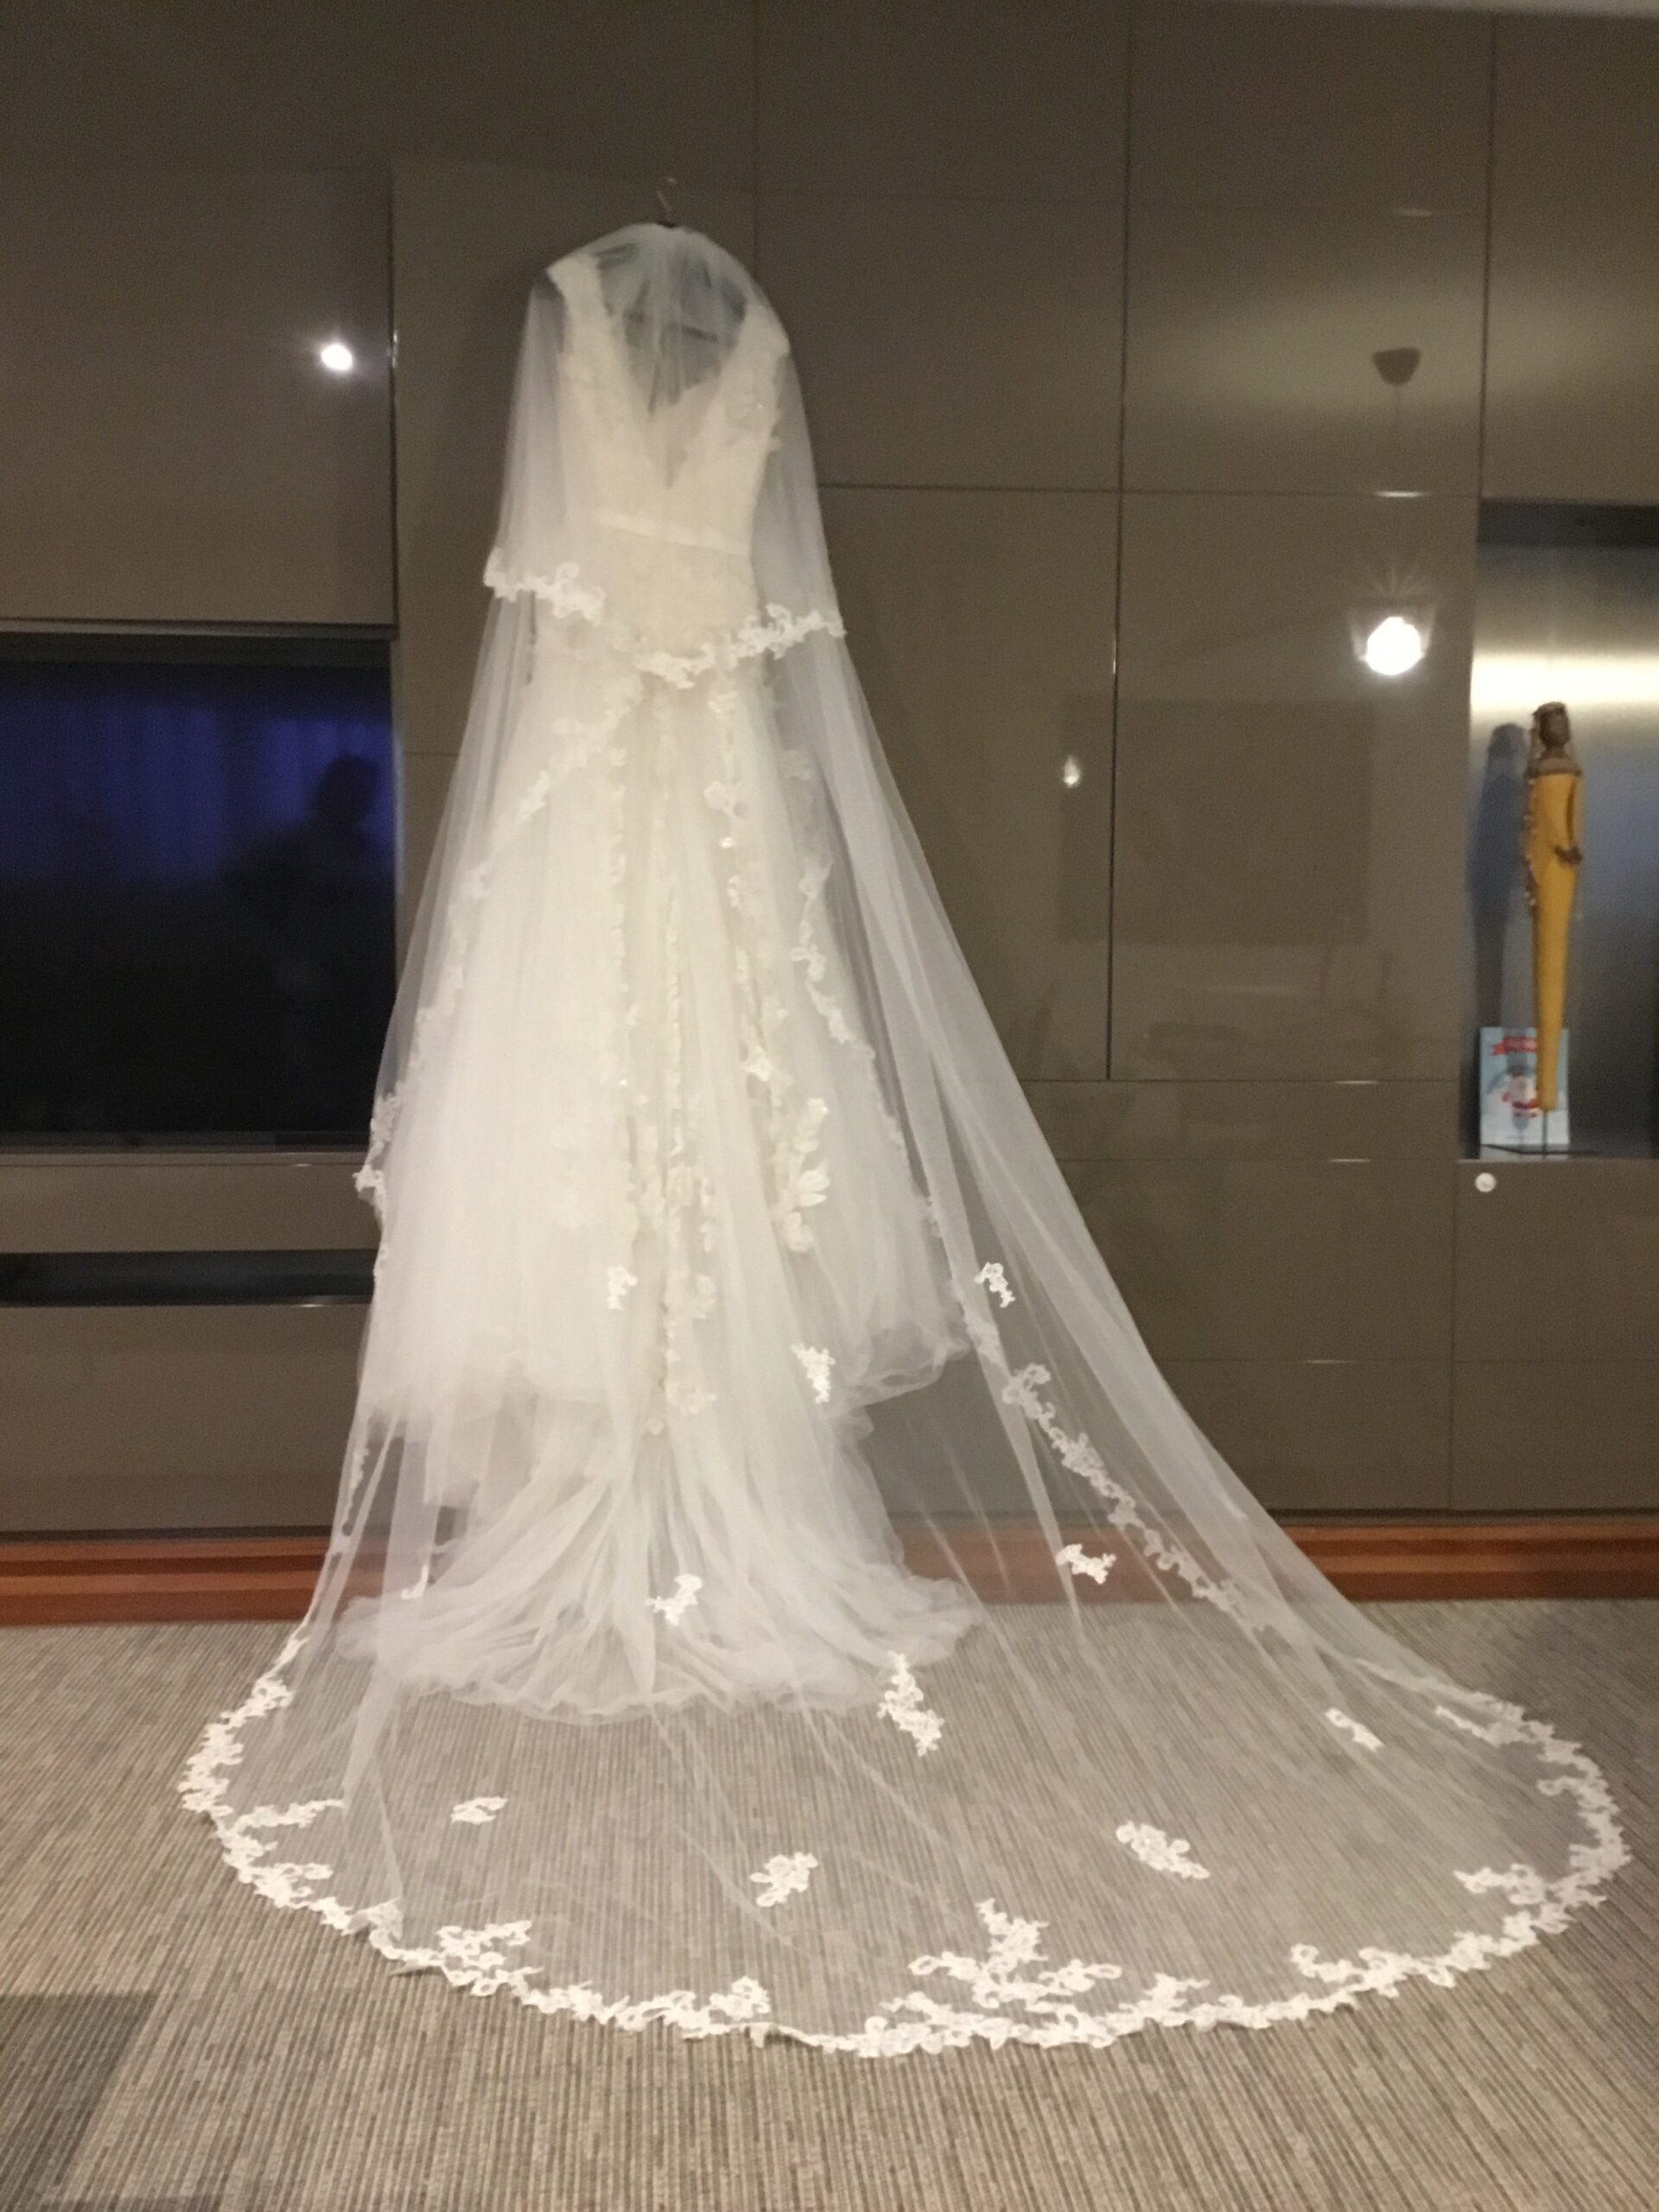 Vestido de noiva Elie Saab Aglaya Wedding Dress. Vestido de Noiva coleção Pronovias- modelo Aglaya Elie Saab 2011 2